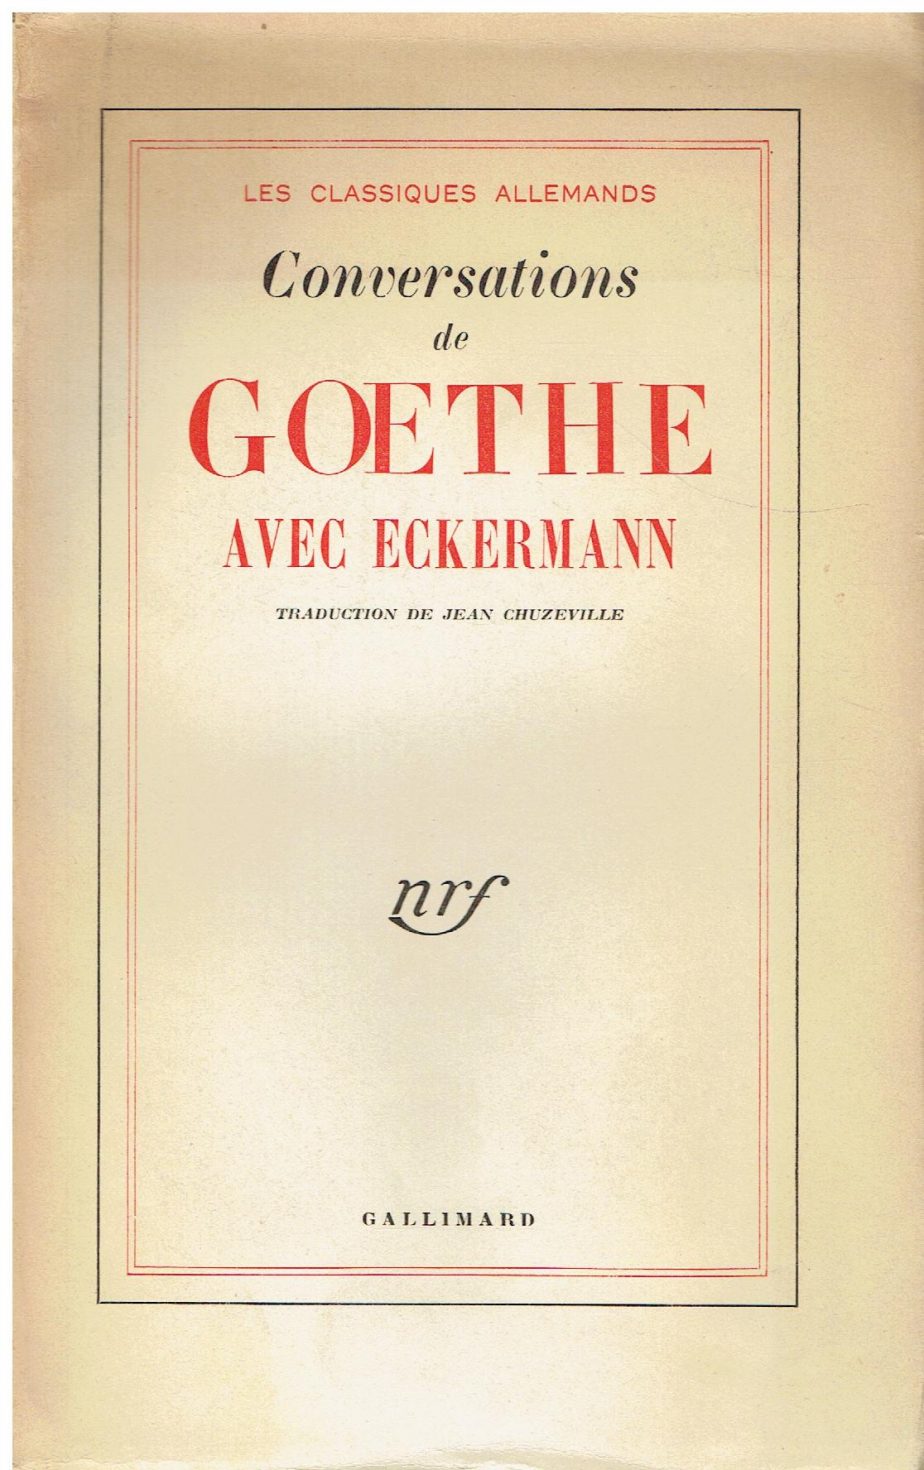 Conversations de Goethe avec Eckermann